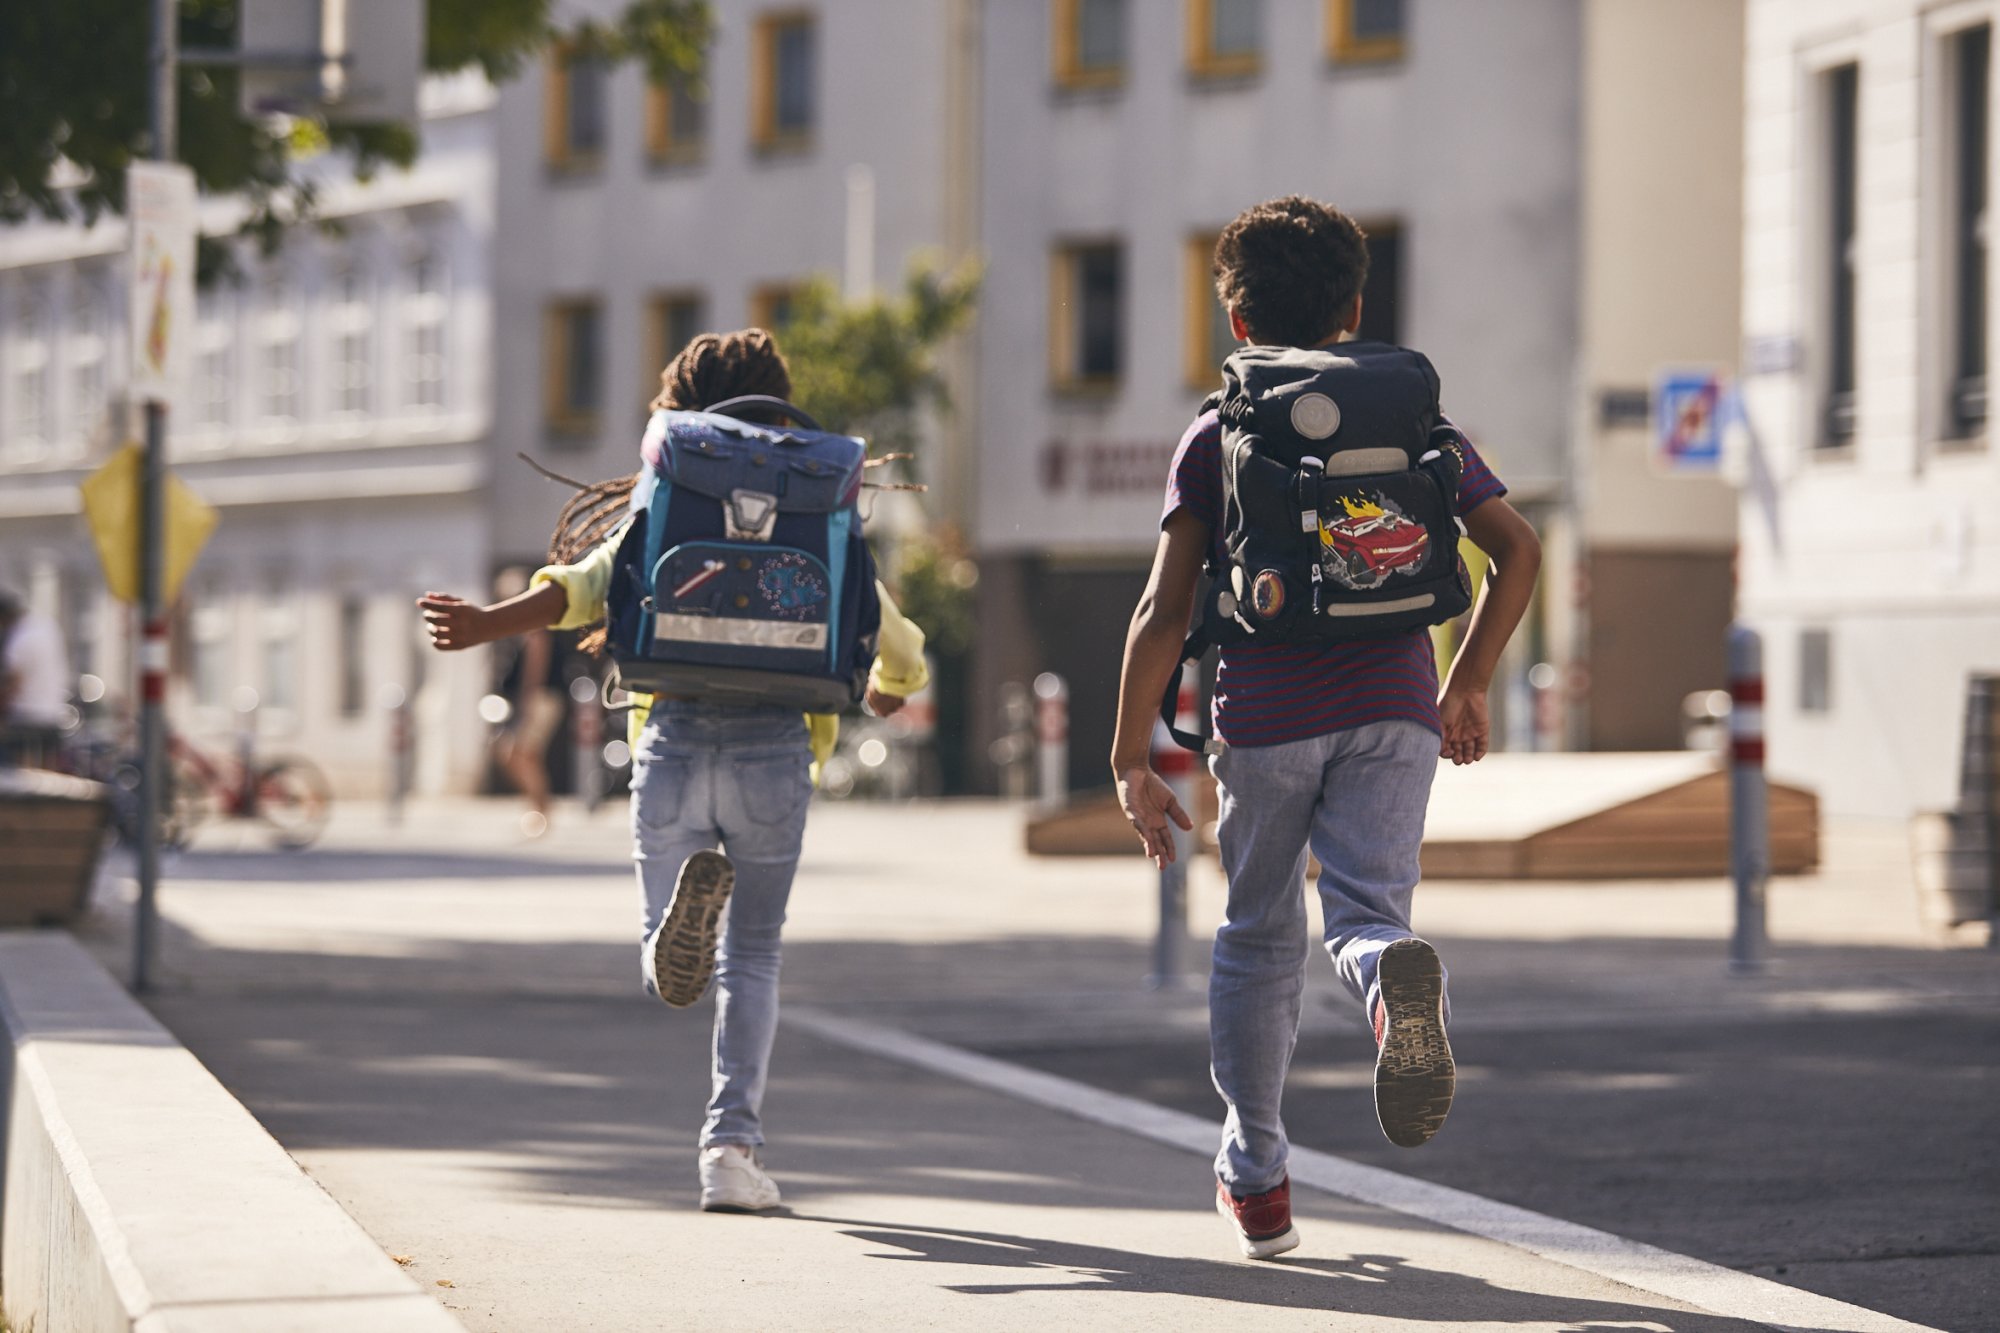 Zwei laufende Kinder von hinten, die Schultaschen haben Reflektorstreifen